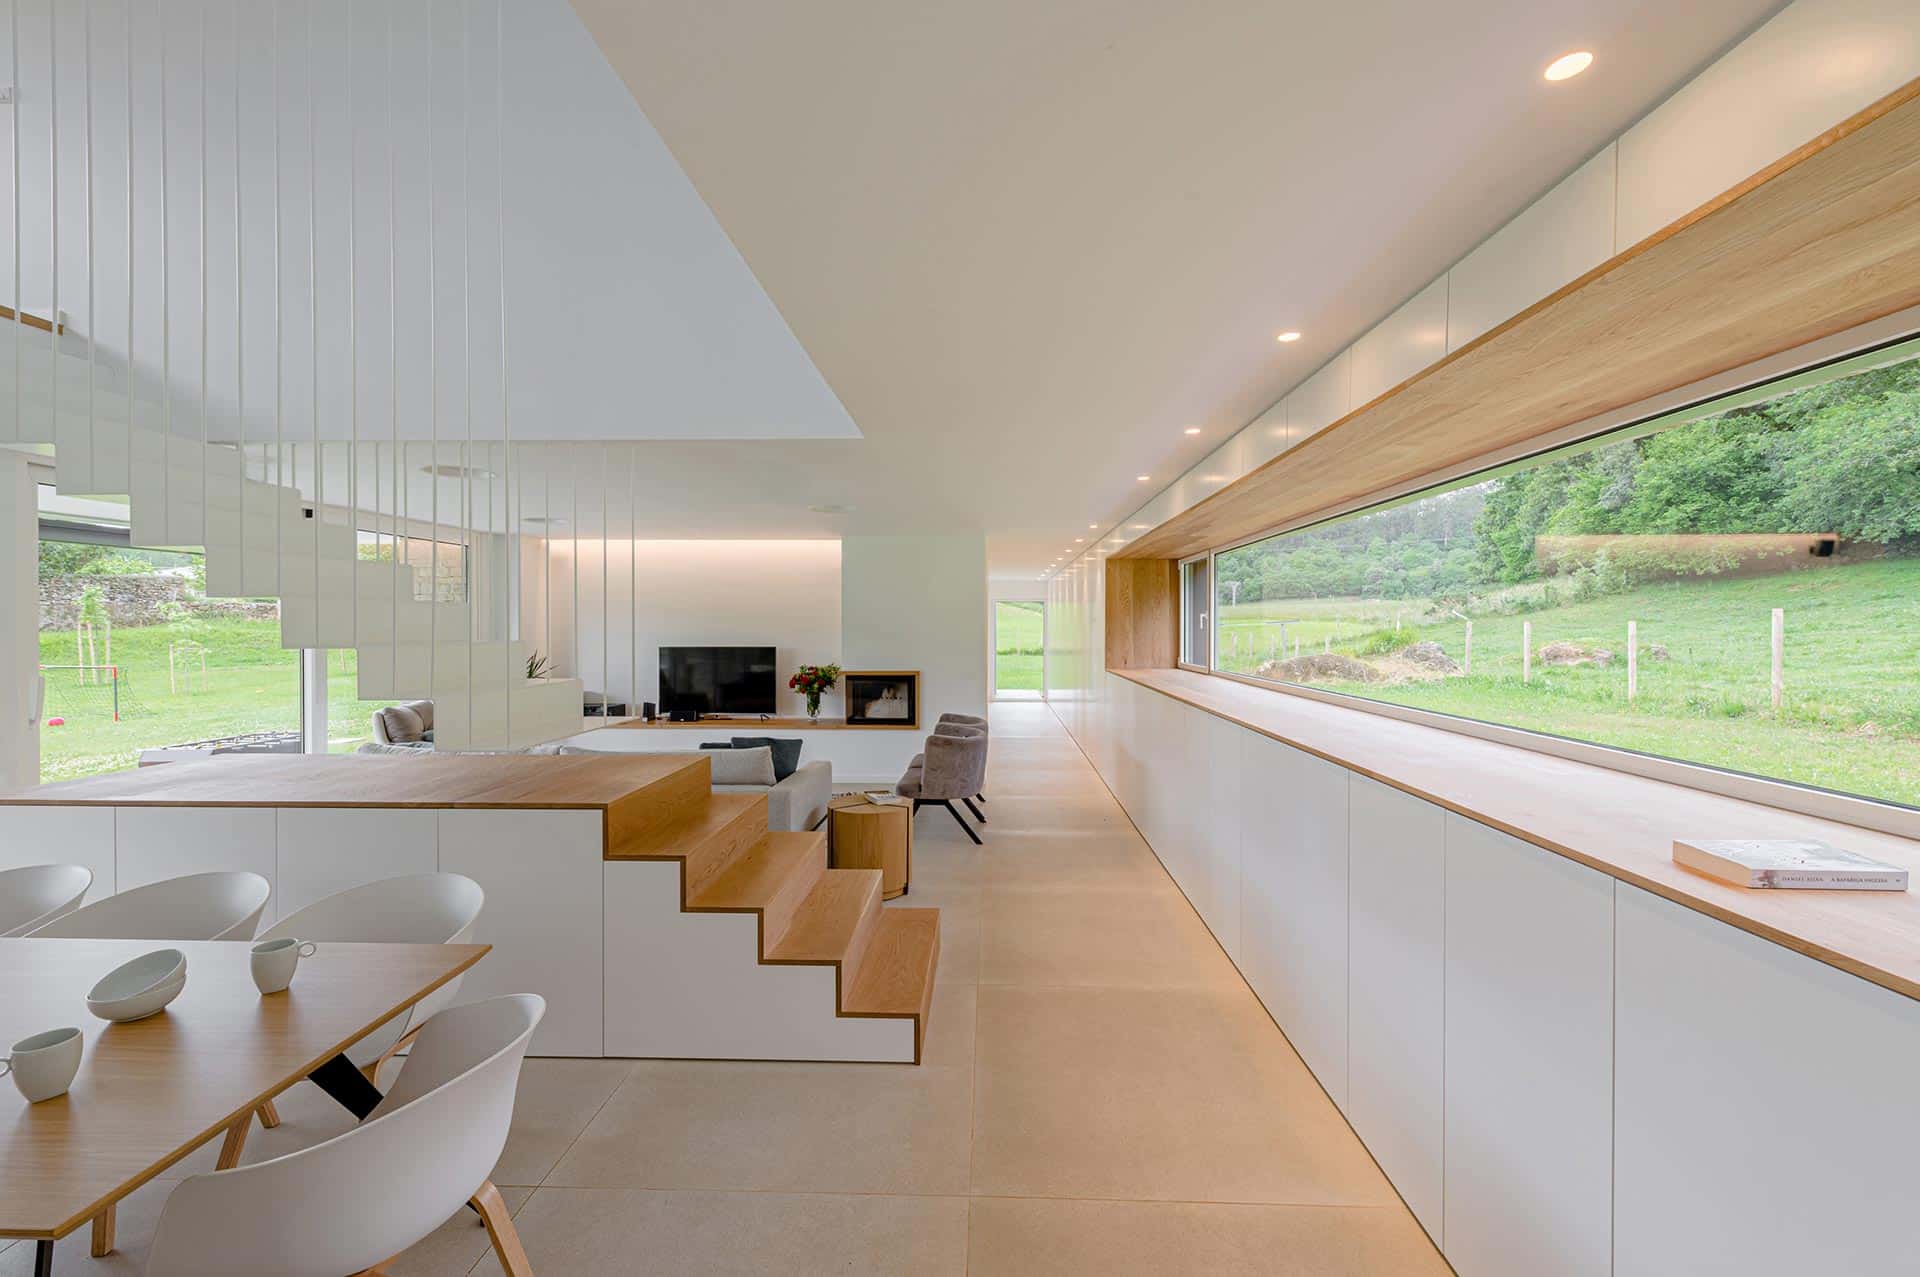 Salón comedor de vivienda moderna de lujo diseñada por Moah Arquitectos en Pámanes